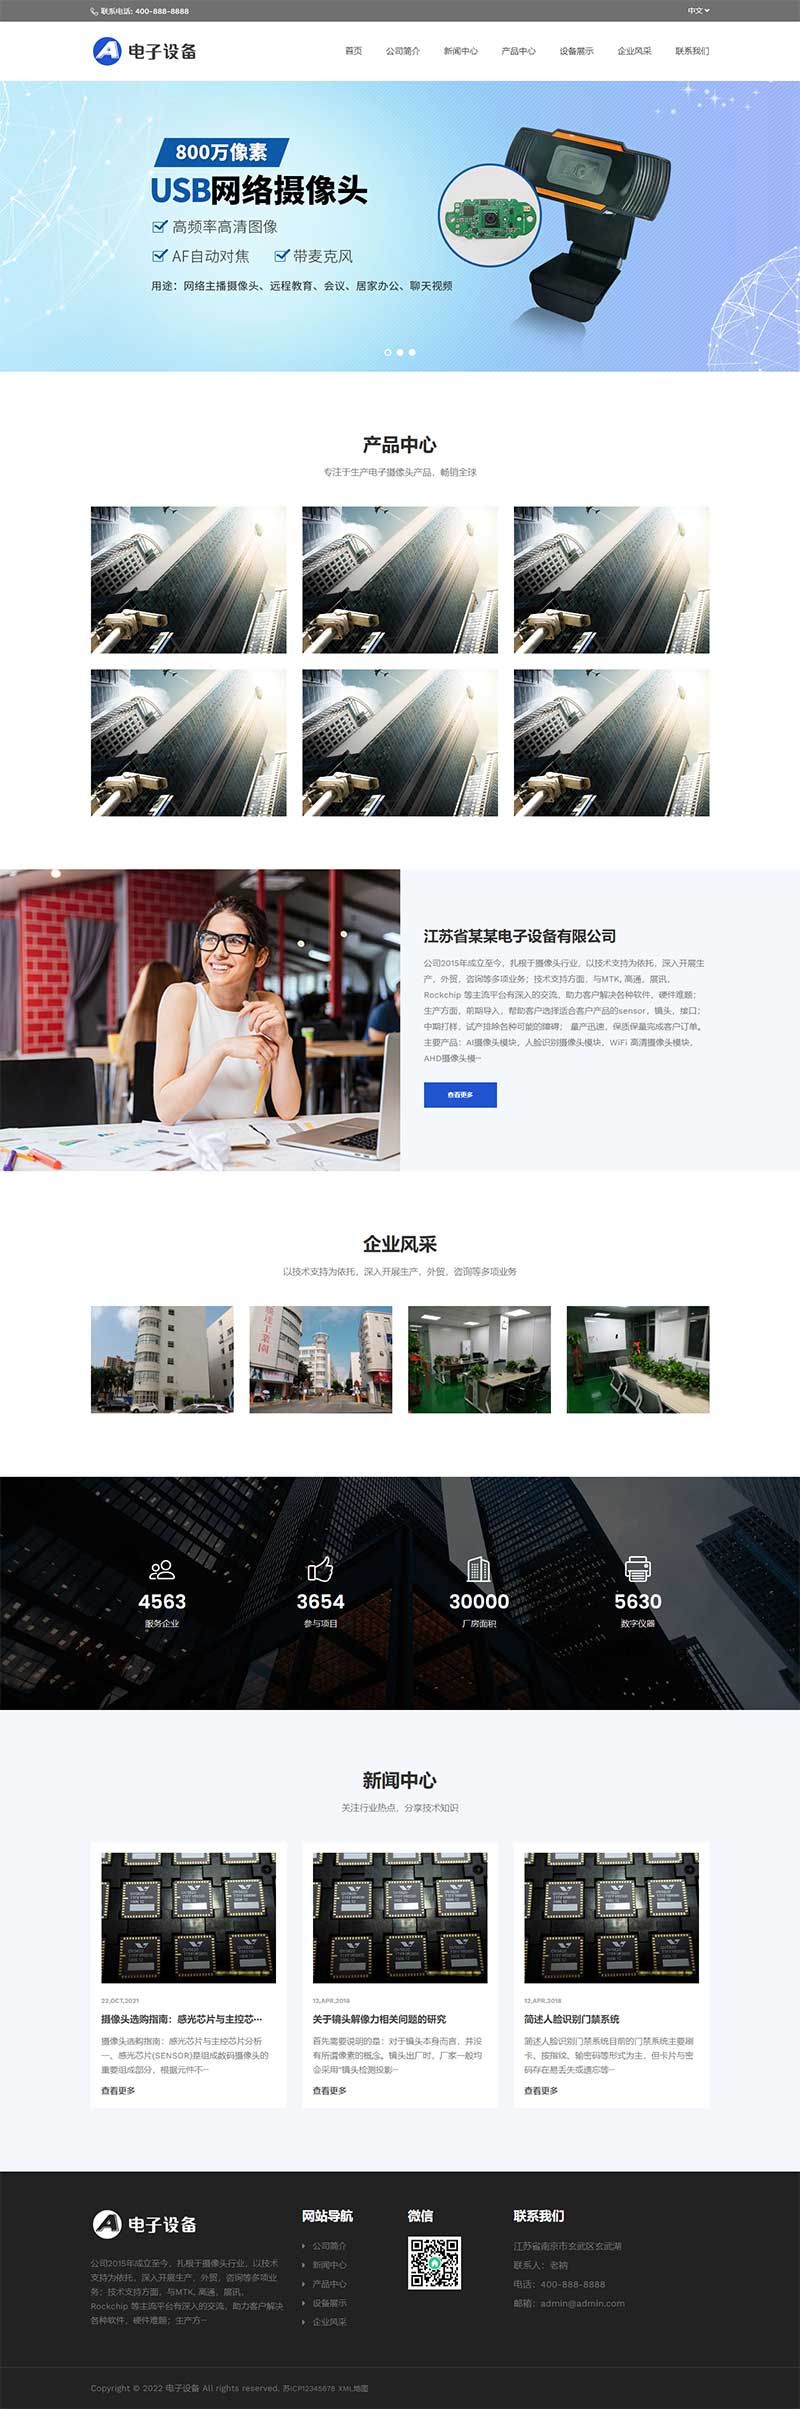 中英文双语网络摄像头探头电子摄像头WordPress网站模板演示图